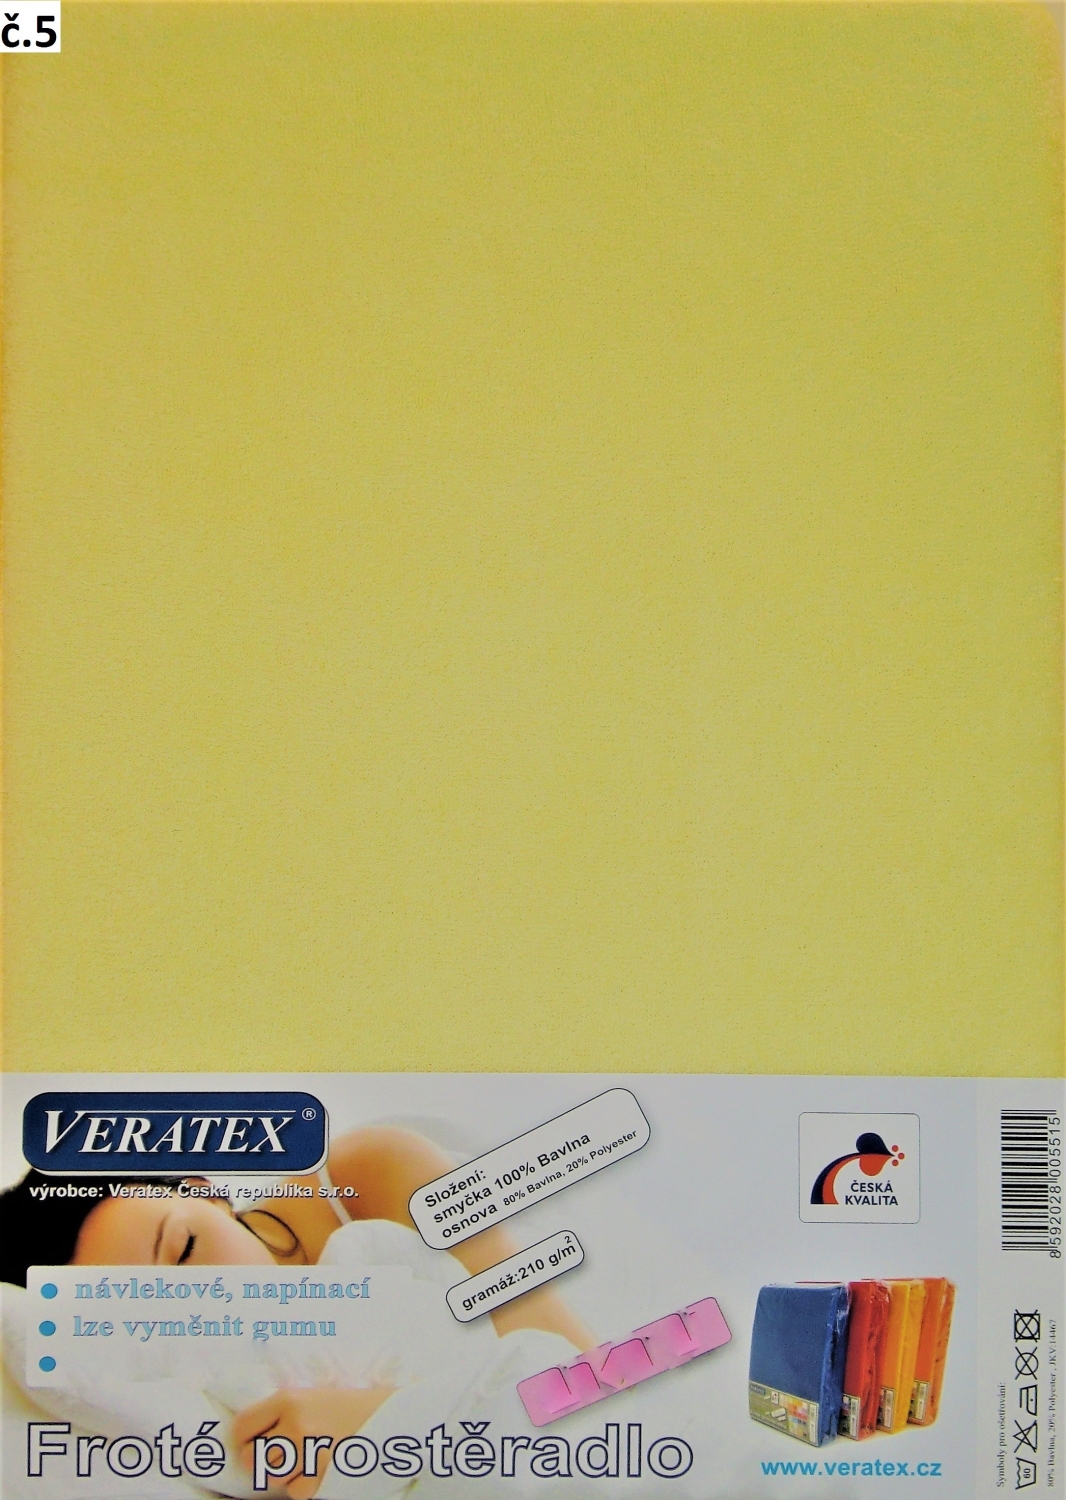 Veratex Froté prostěradlo jednolůžko 90x200/16 cm (č. 5-sv.žlutá)